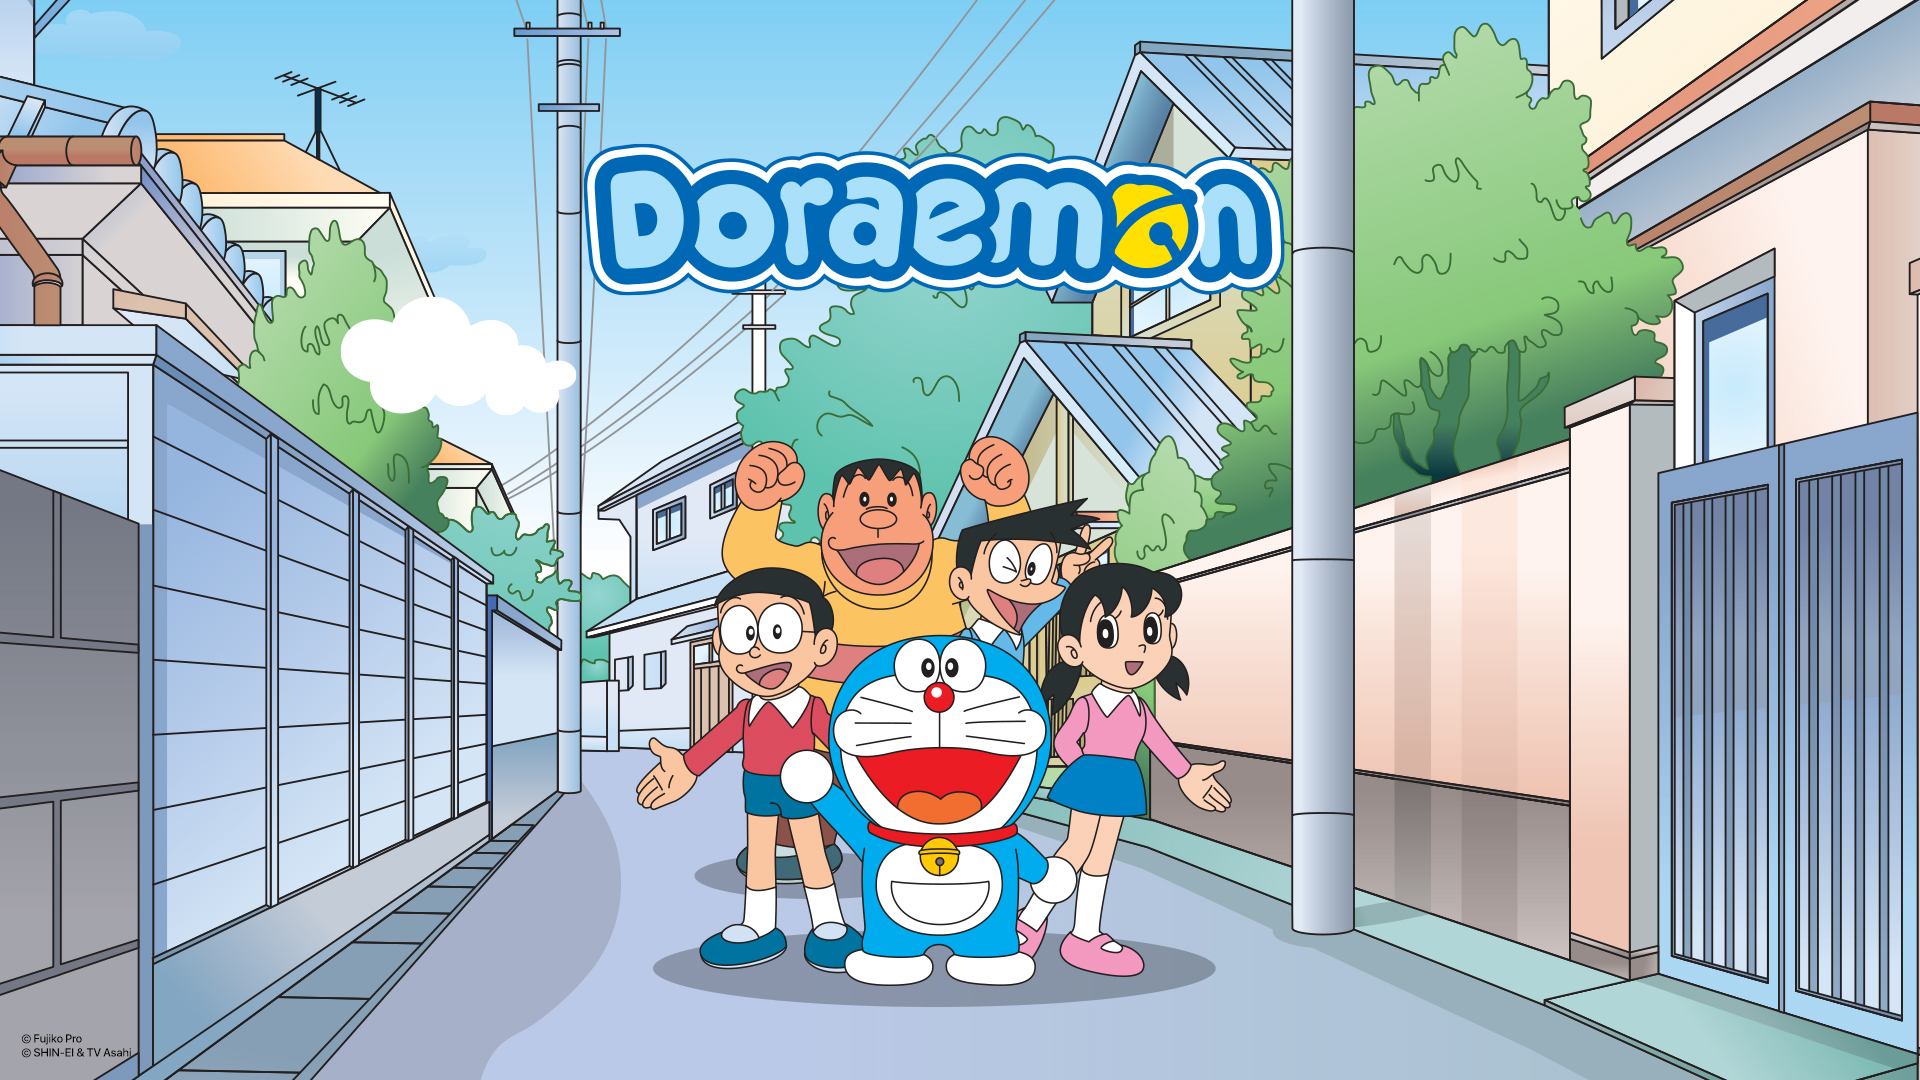 Phim Doraemon tiếng Anh: Hướng dẫn Toàn diện từ A đến Z cho Người Học